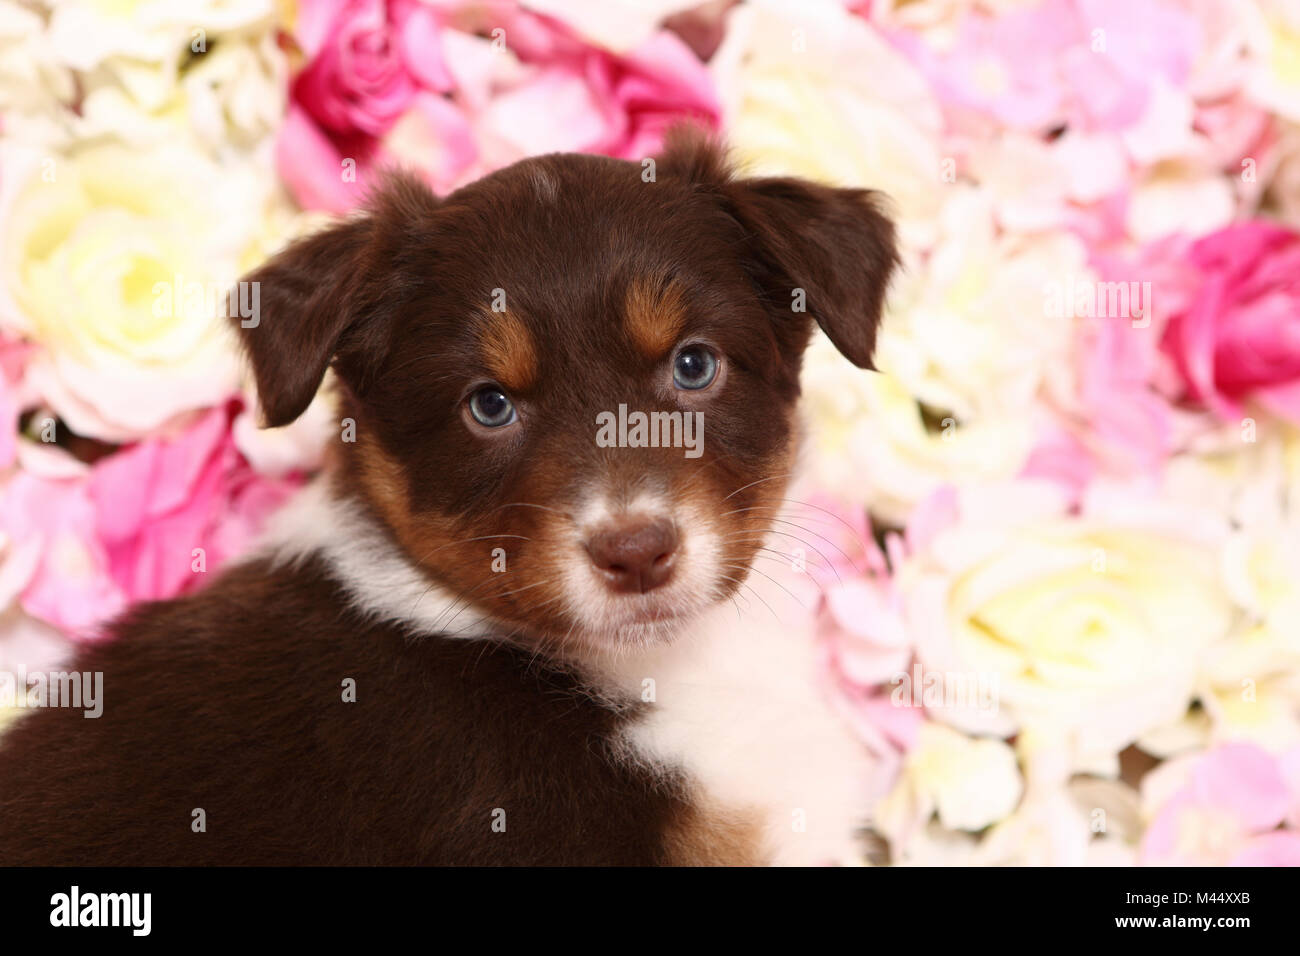 Berger Australien. Puppy (6 semaines) assis parmi les fleurs de rose, portrait. Studio photo. Allemagne Banque D'Images